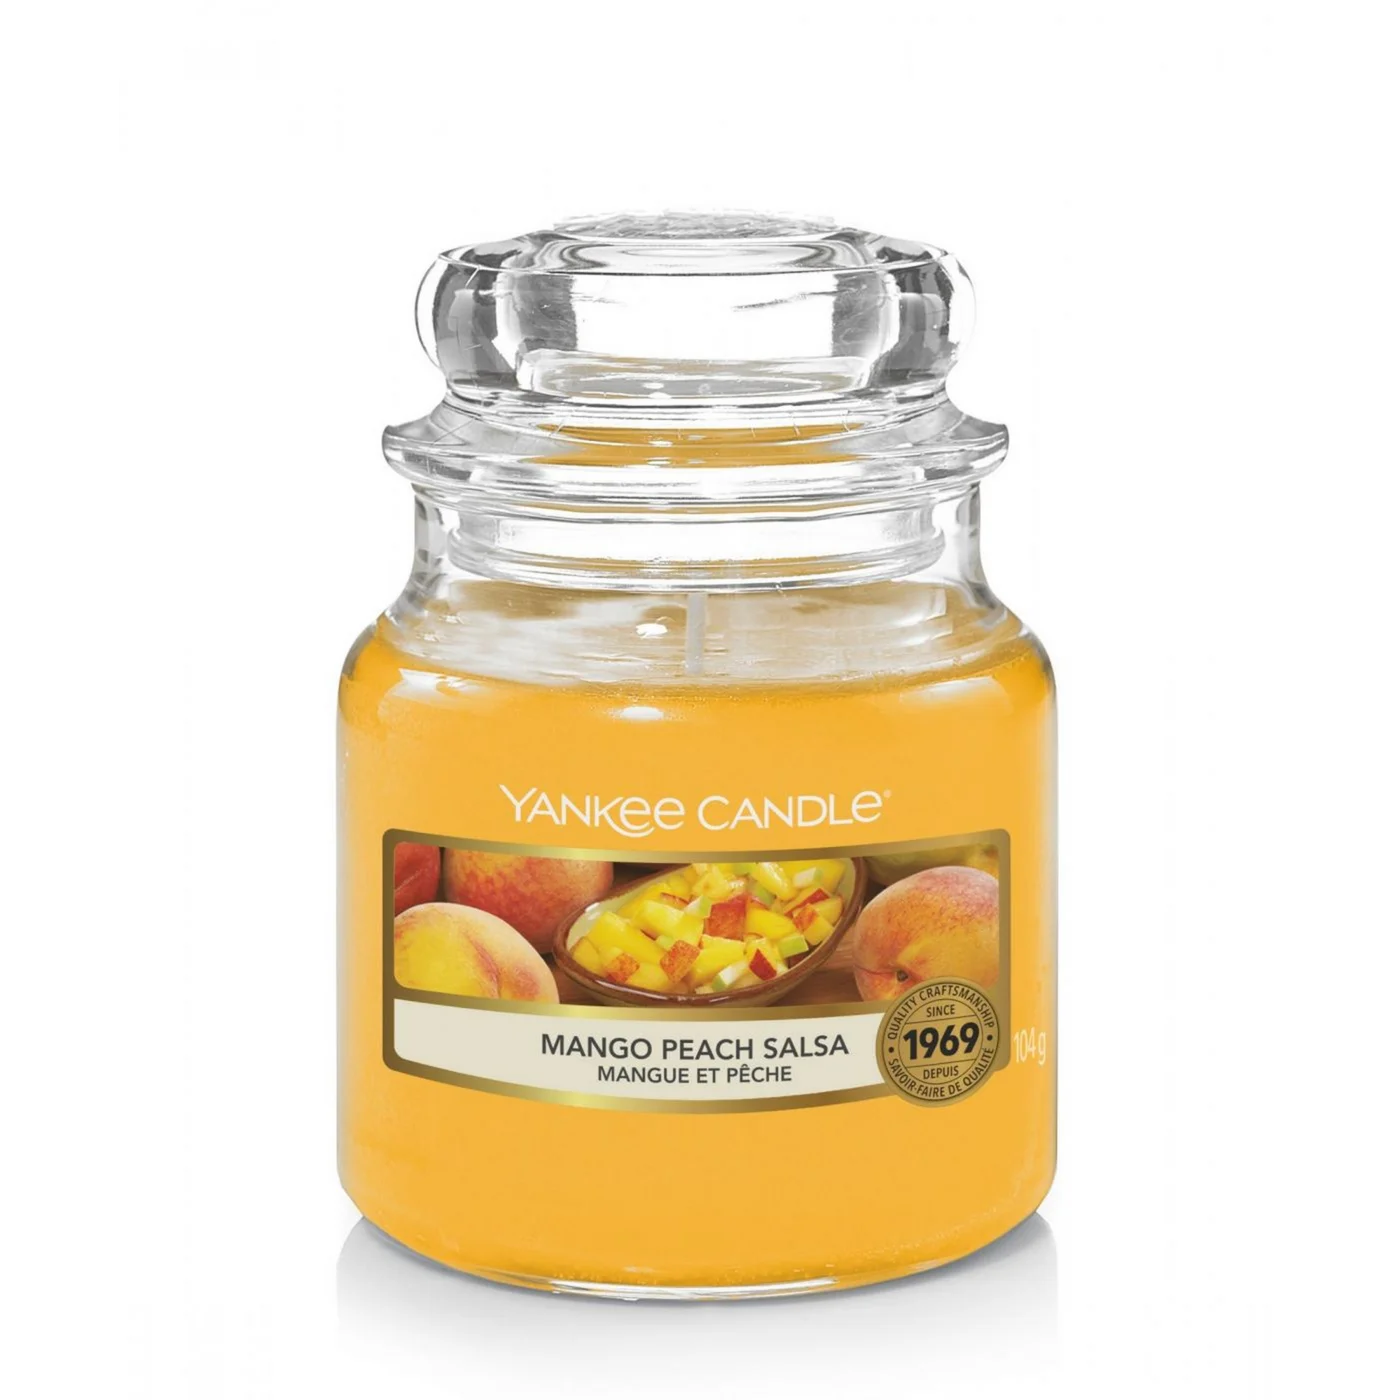 YANKEE CANDLE - Mała świeca zapachowa w słoiku - Mango Peach Salsa